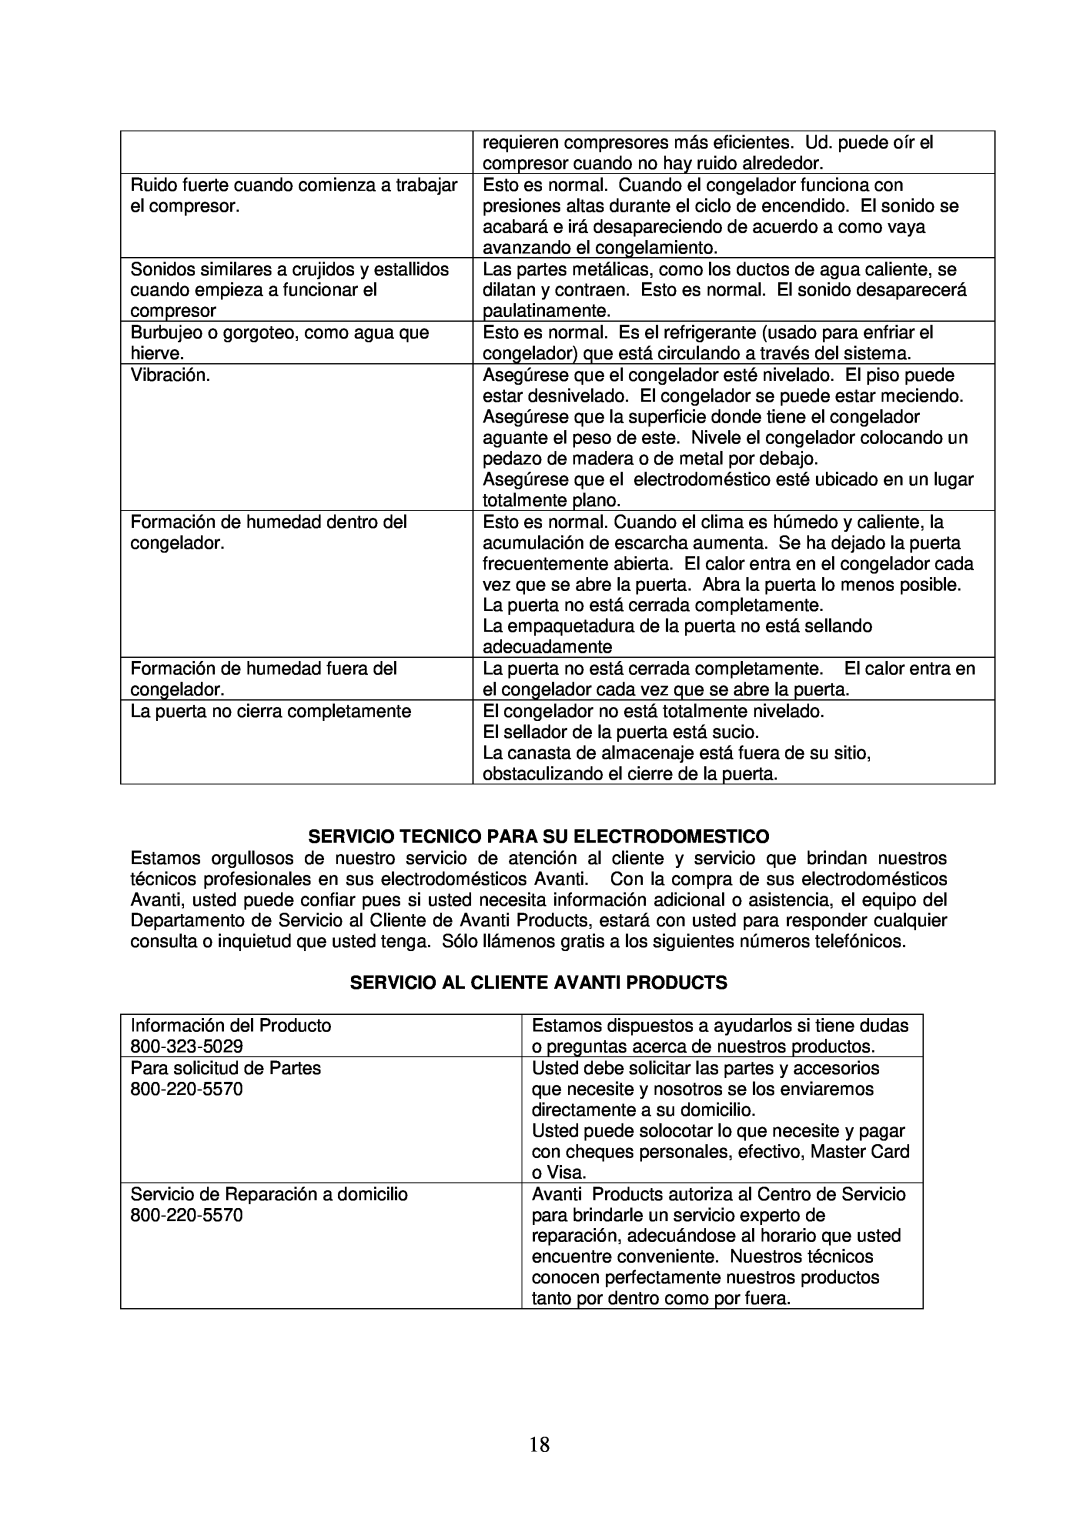 Avanti CF103 instruction manual Servicio Tecnico Para Su Electrodomestico, Servicio Al Cliente Avanti Products 